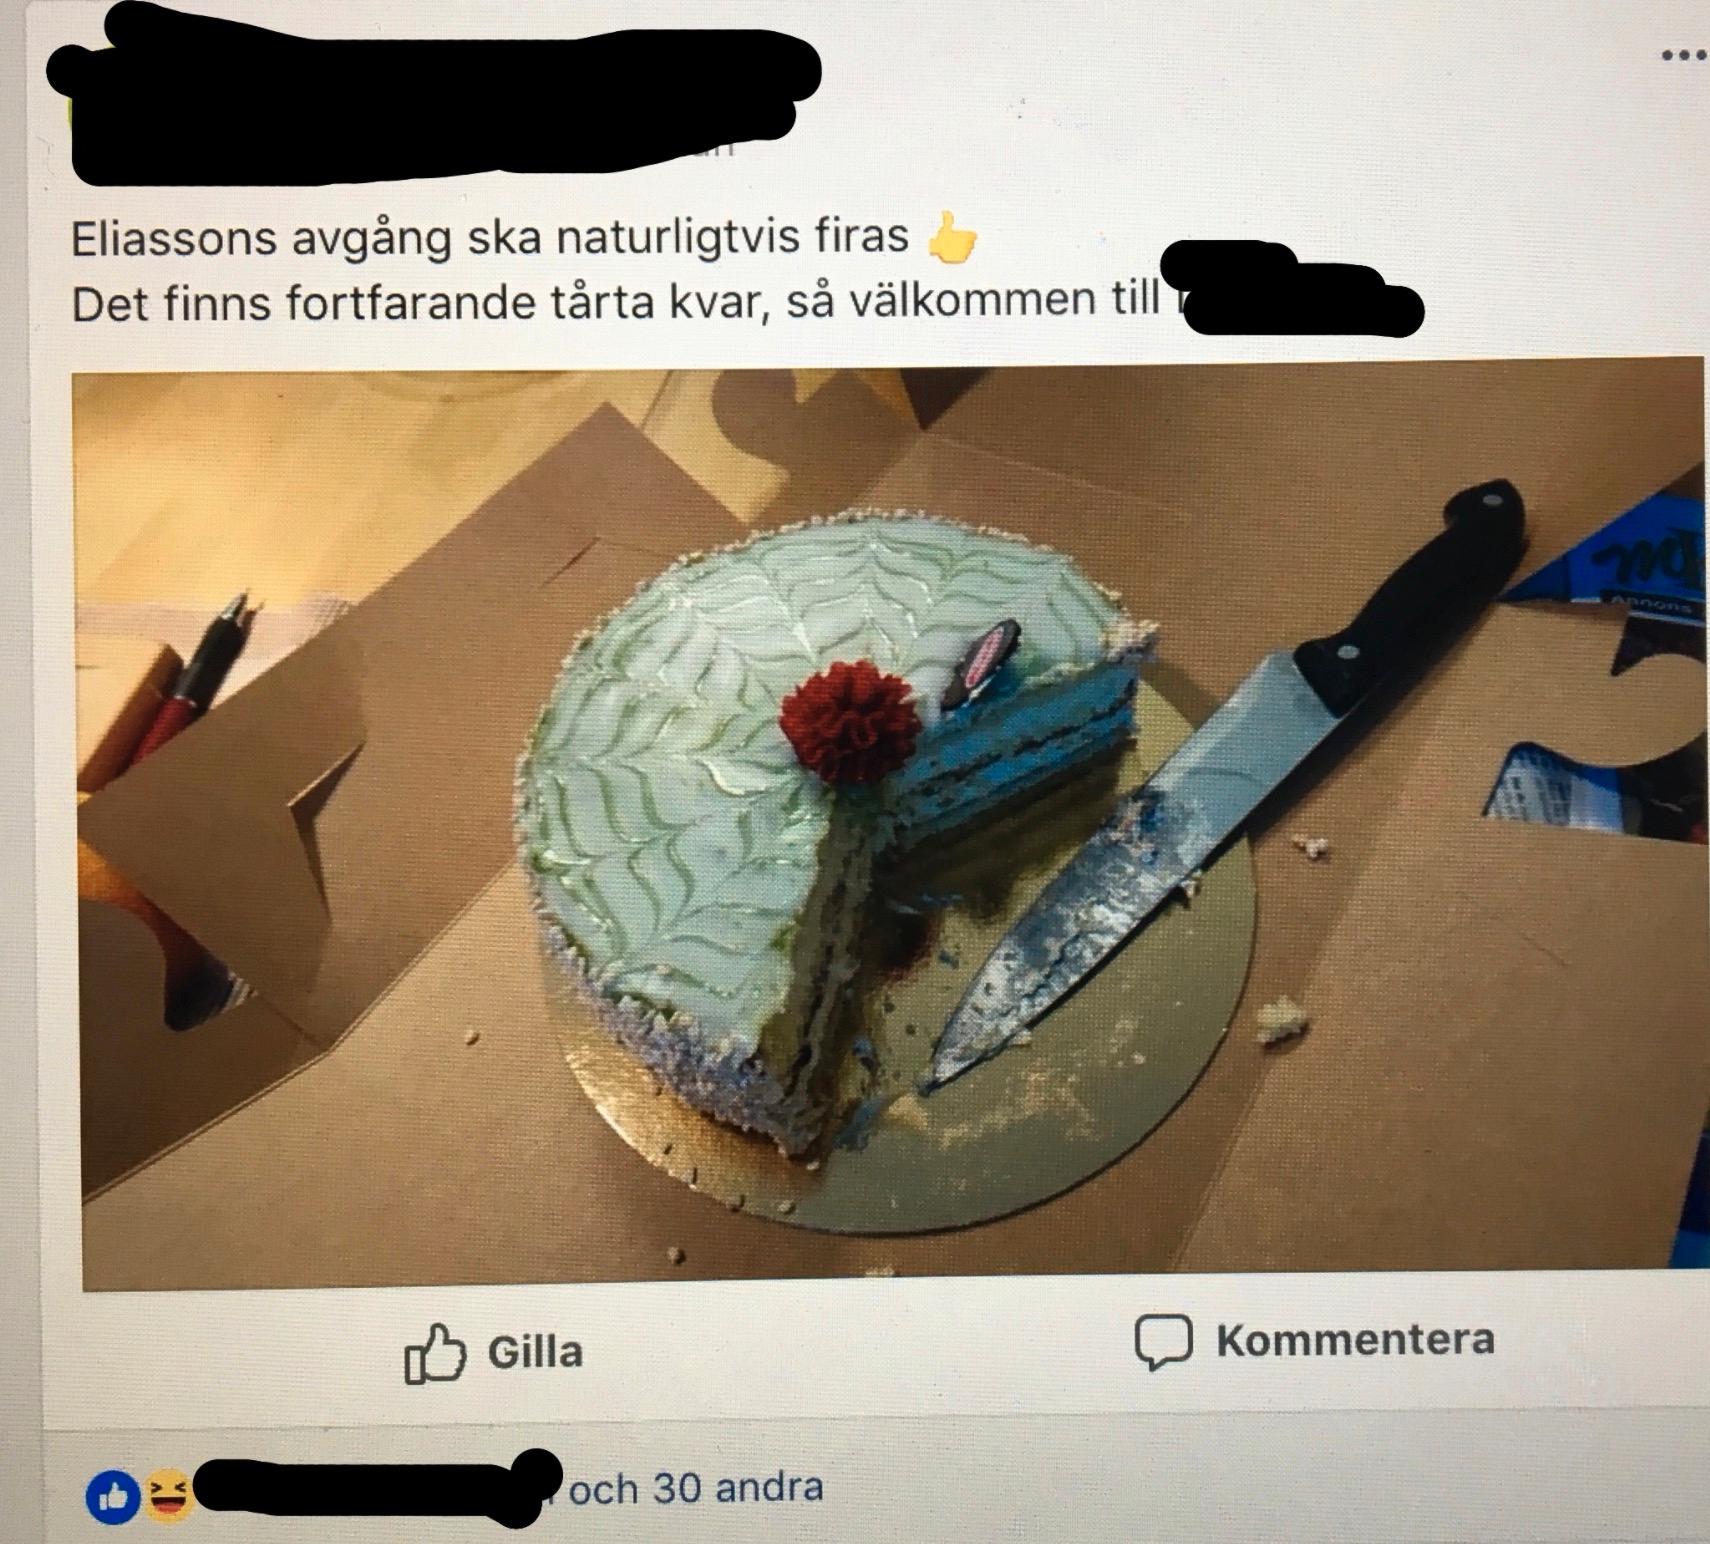 Dan Eliassons avgång firas med tårta enligt uppgifter till Aftonbladet.